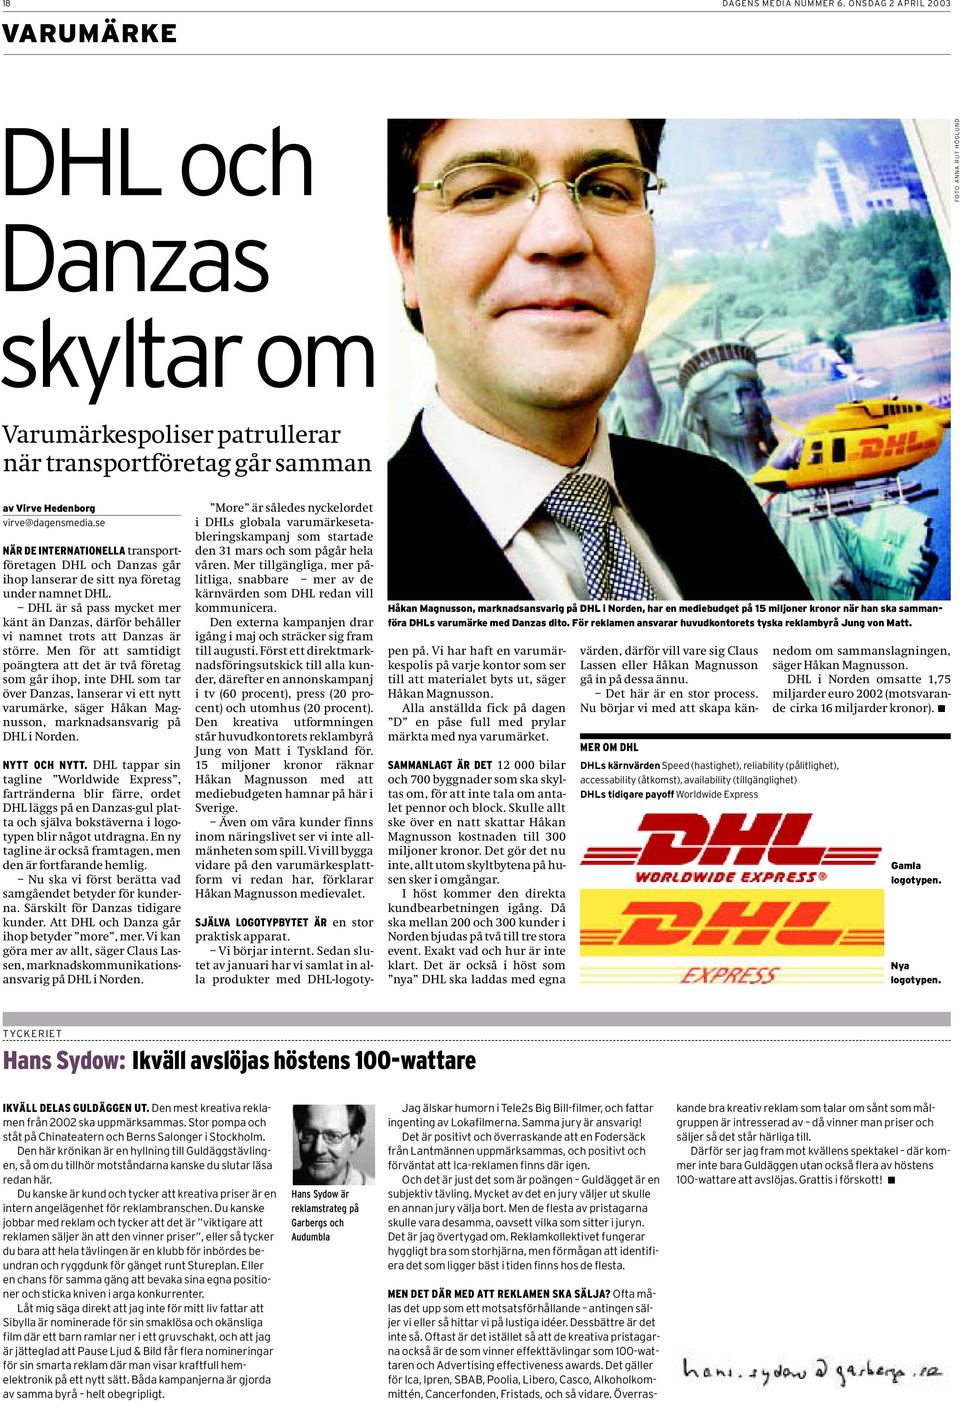 se NÄR DE INTERNATIONELLA transportföretagen DHL och Danzas går ihop lanserar de sitt nya företag under namnet DHL.